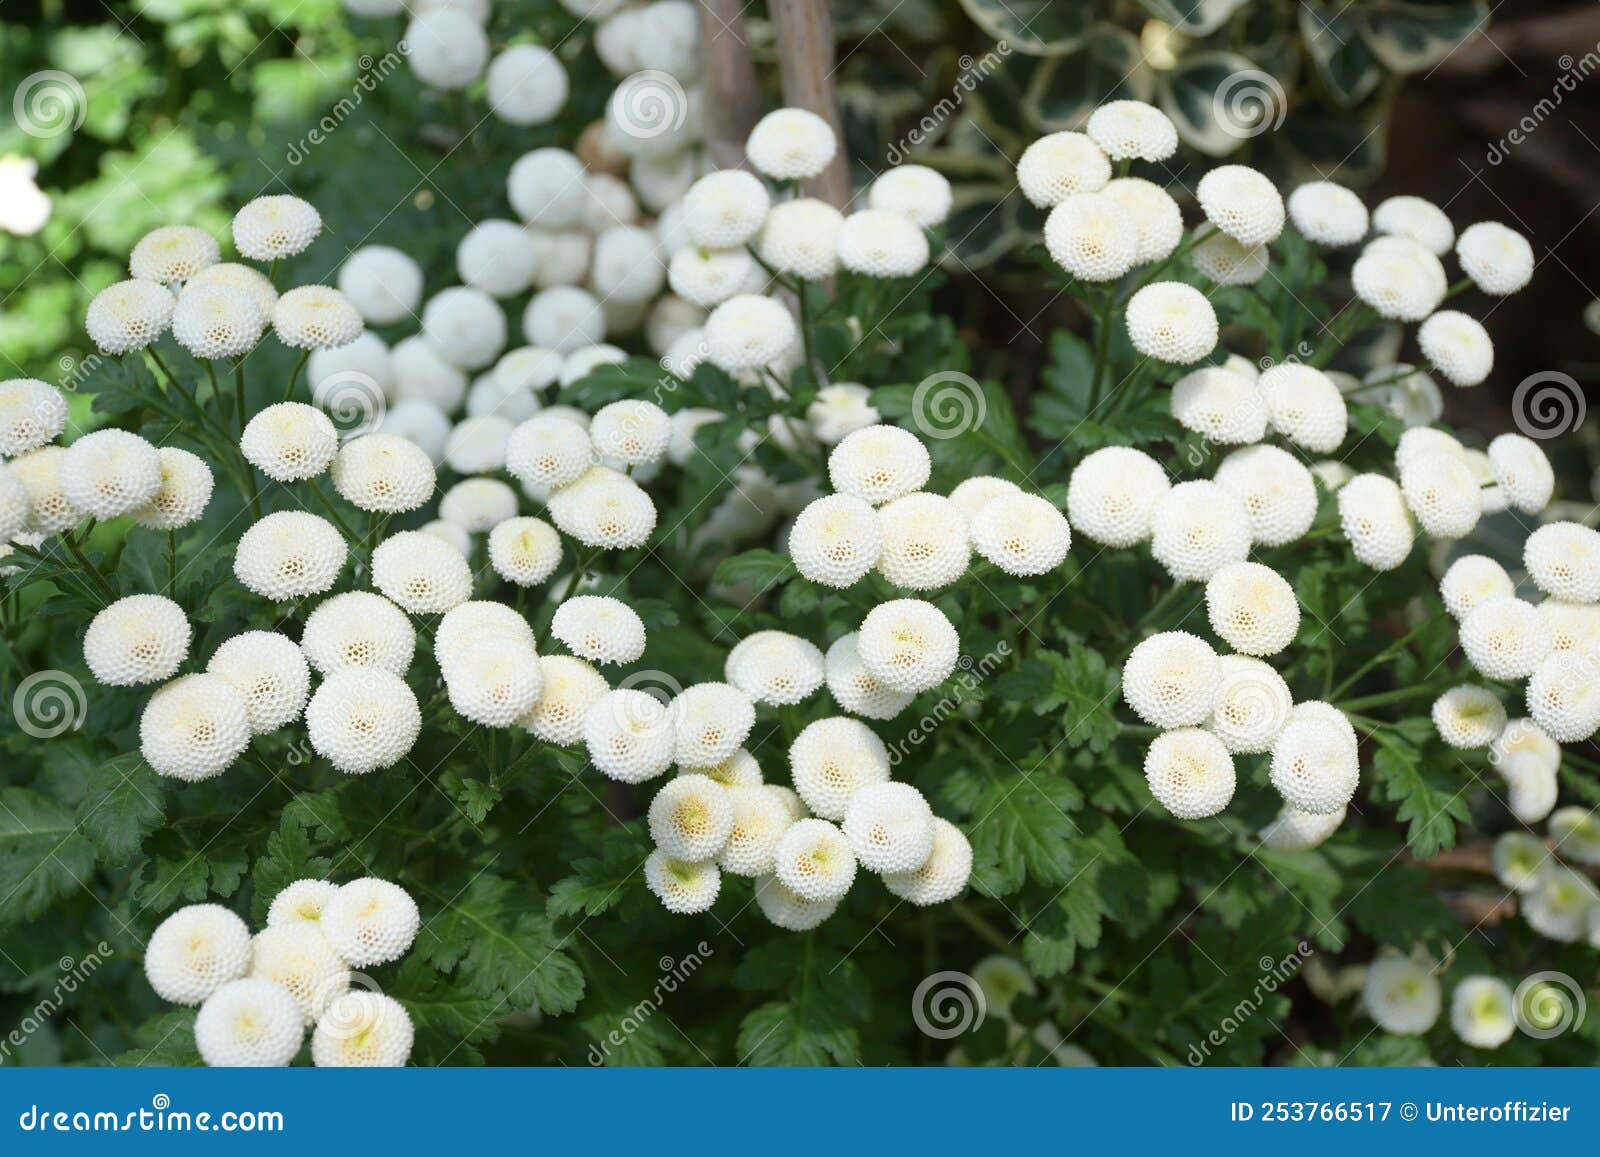 tanacetum parthenium feverfew compositae or chrysanthemum indicum indian chrysanthemum